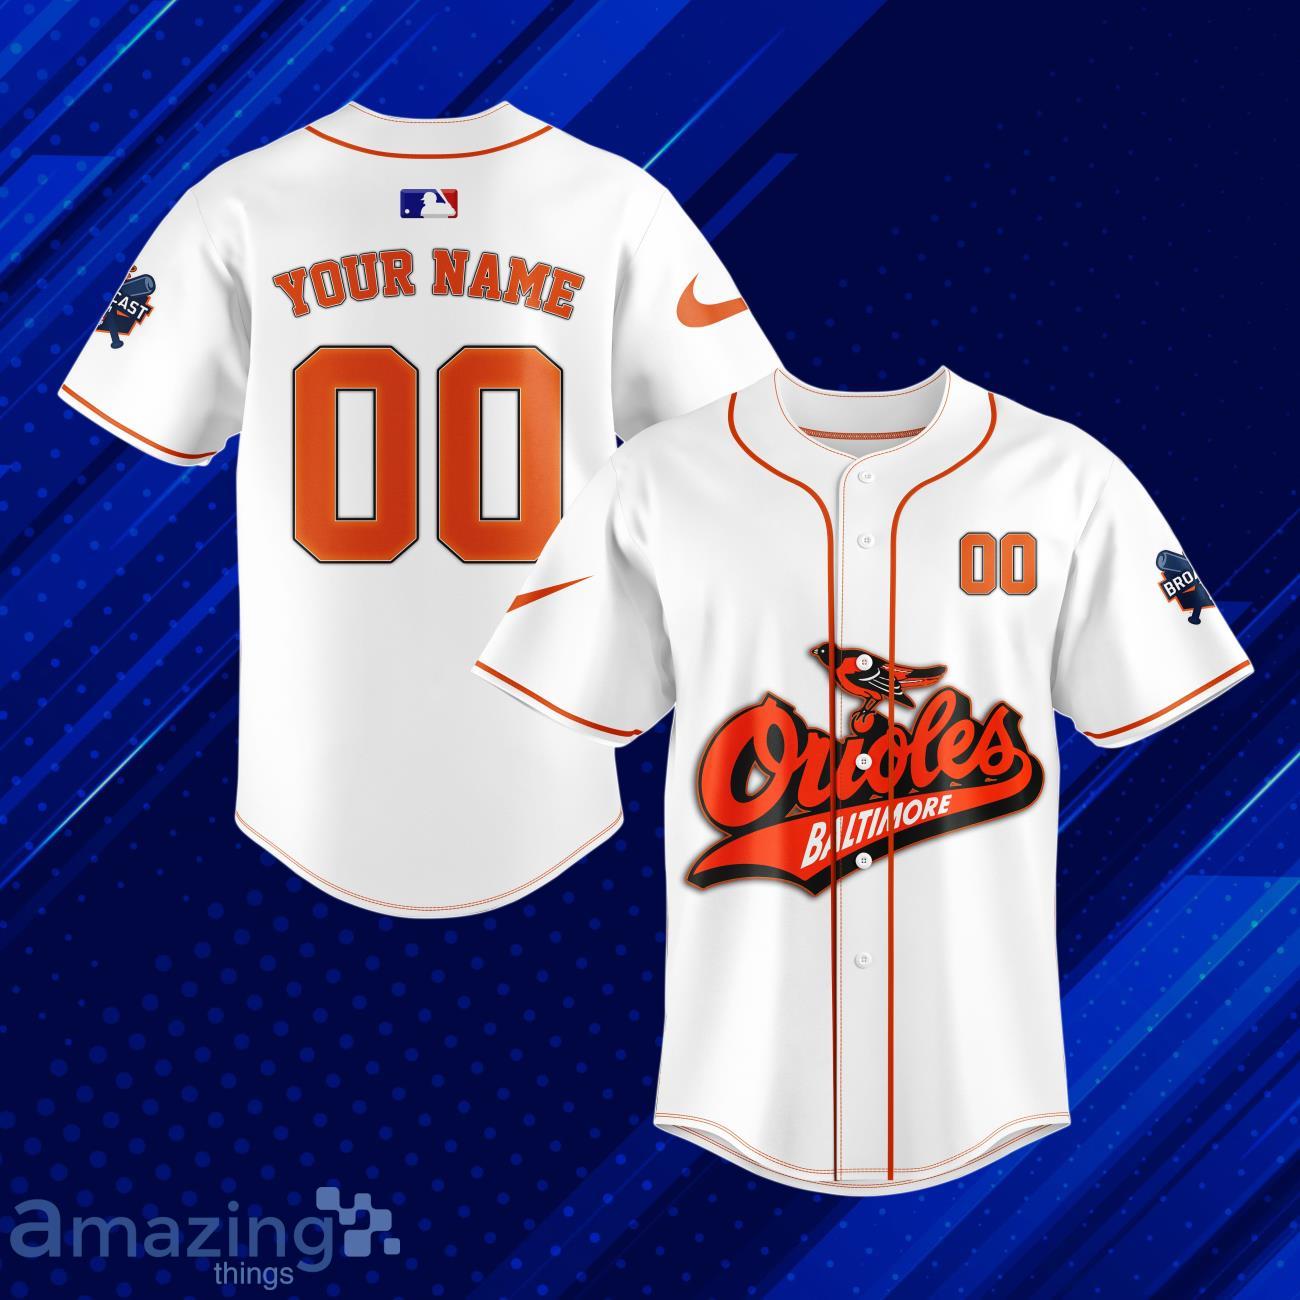 MLB Baltimore Orioles White Baseball Jersey Custom Name & Number